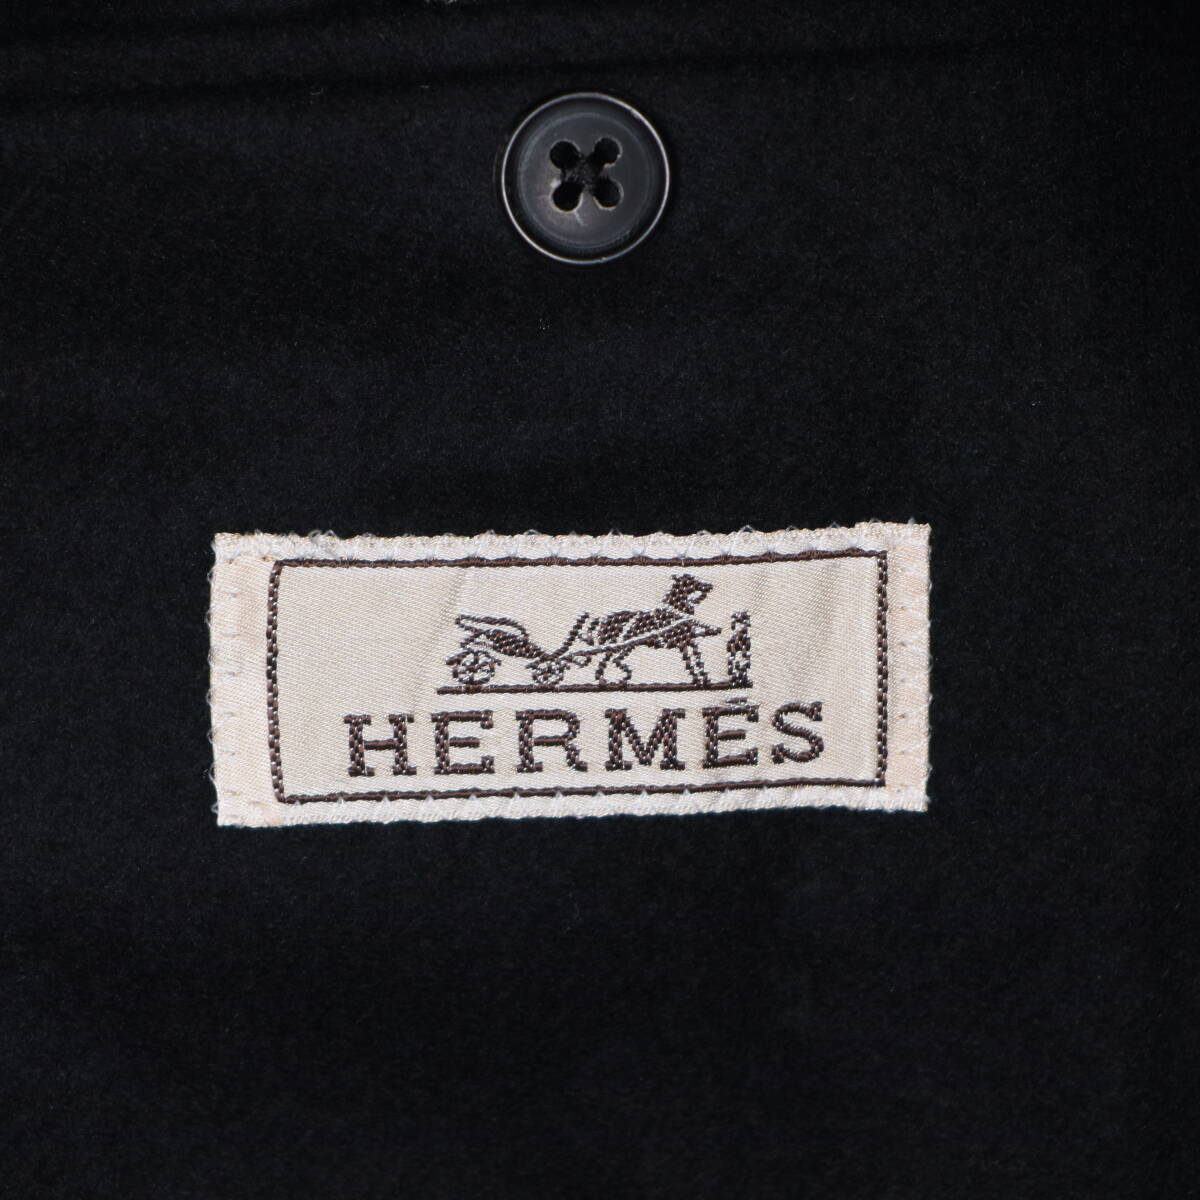 HERMES 14AW 国内正規品 ファントムテクニック テーラードジャケット 44 名作 super120's レザー切替 ラムスキン タキシード ブレザー_画像6